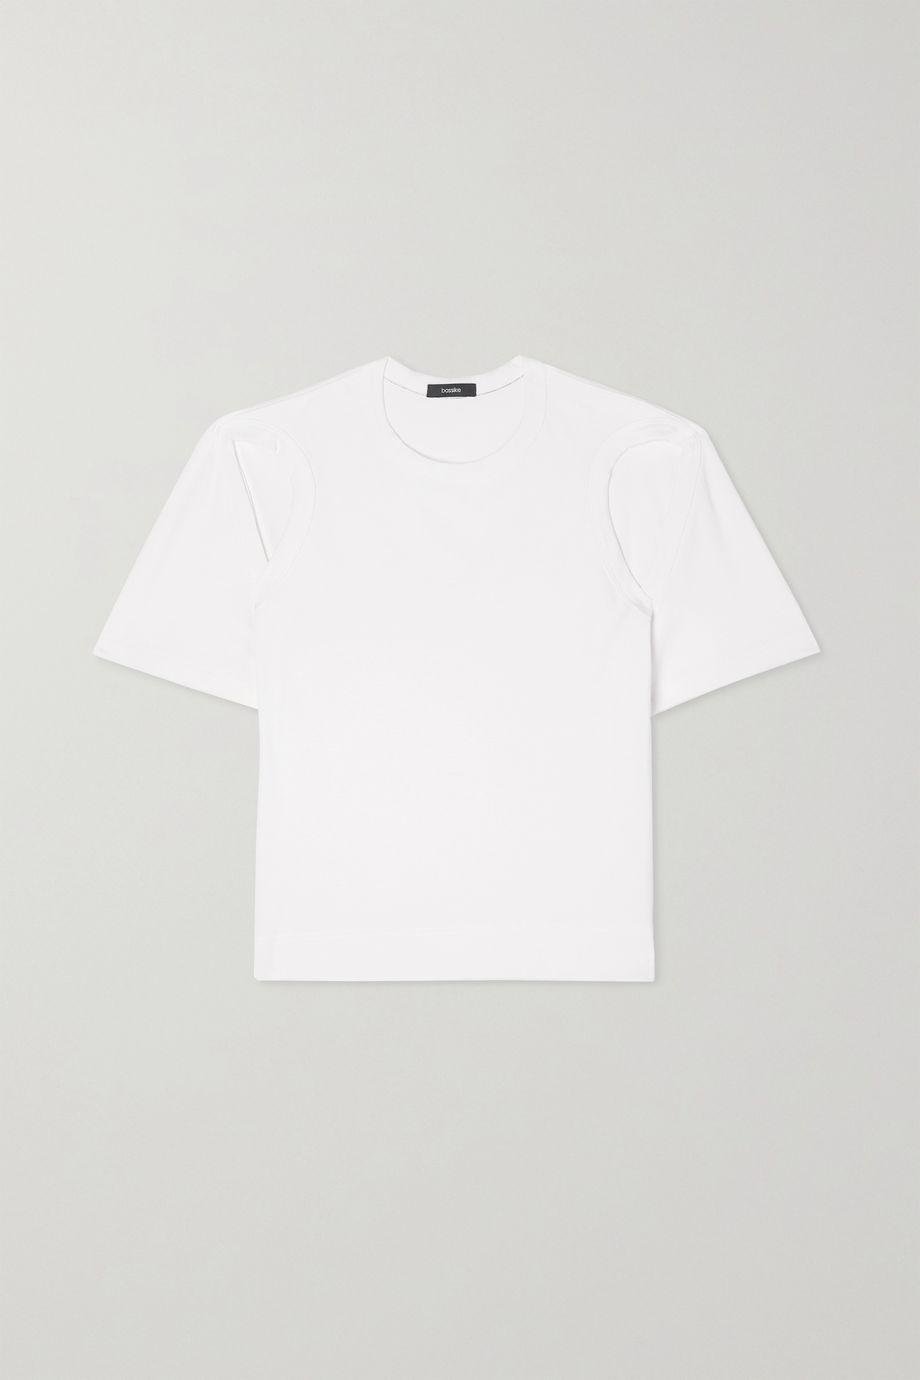 + NET SUSTAIN cutout organic cotton-jersey T-shirt by BASSIKE